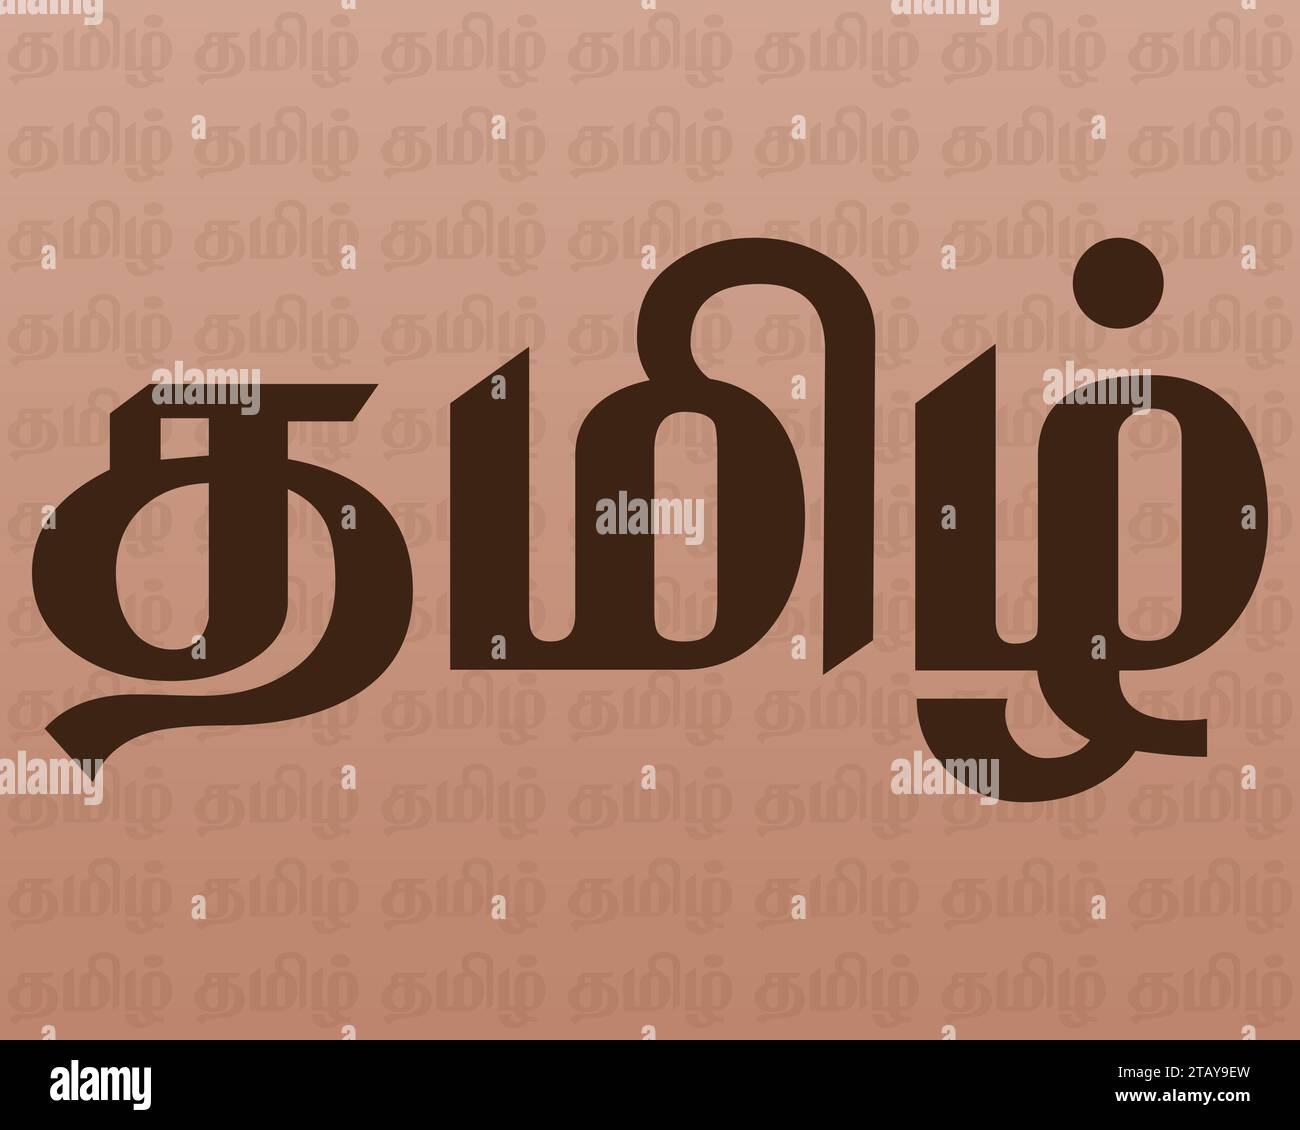 Sfondo classico della lingua tamil. Il Tamil è una lingua ufficiale negli stati indiani Tamil Nadu e UT Puducherry e anche Sri Lanka, Singapore. Illustrazione Vettoriale